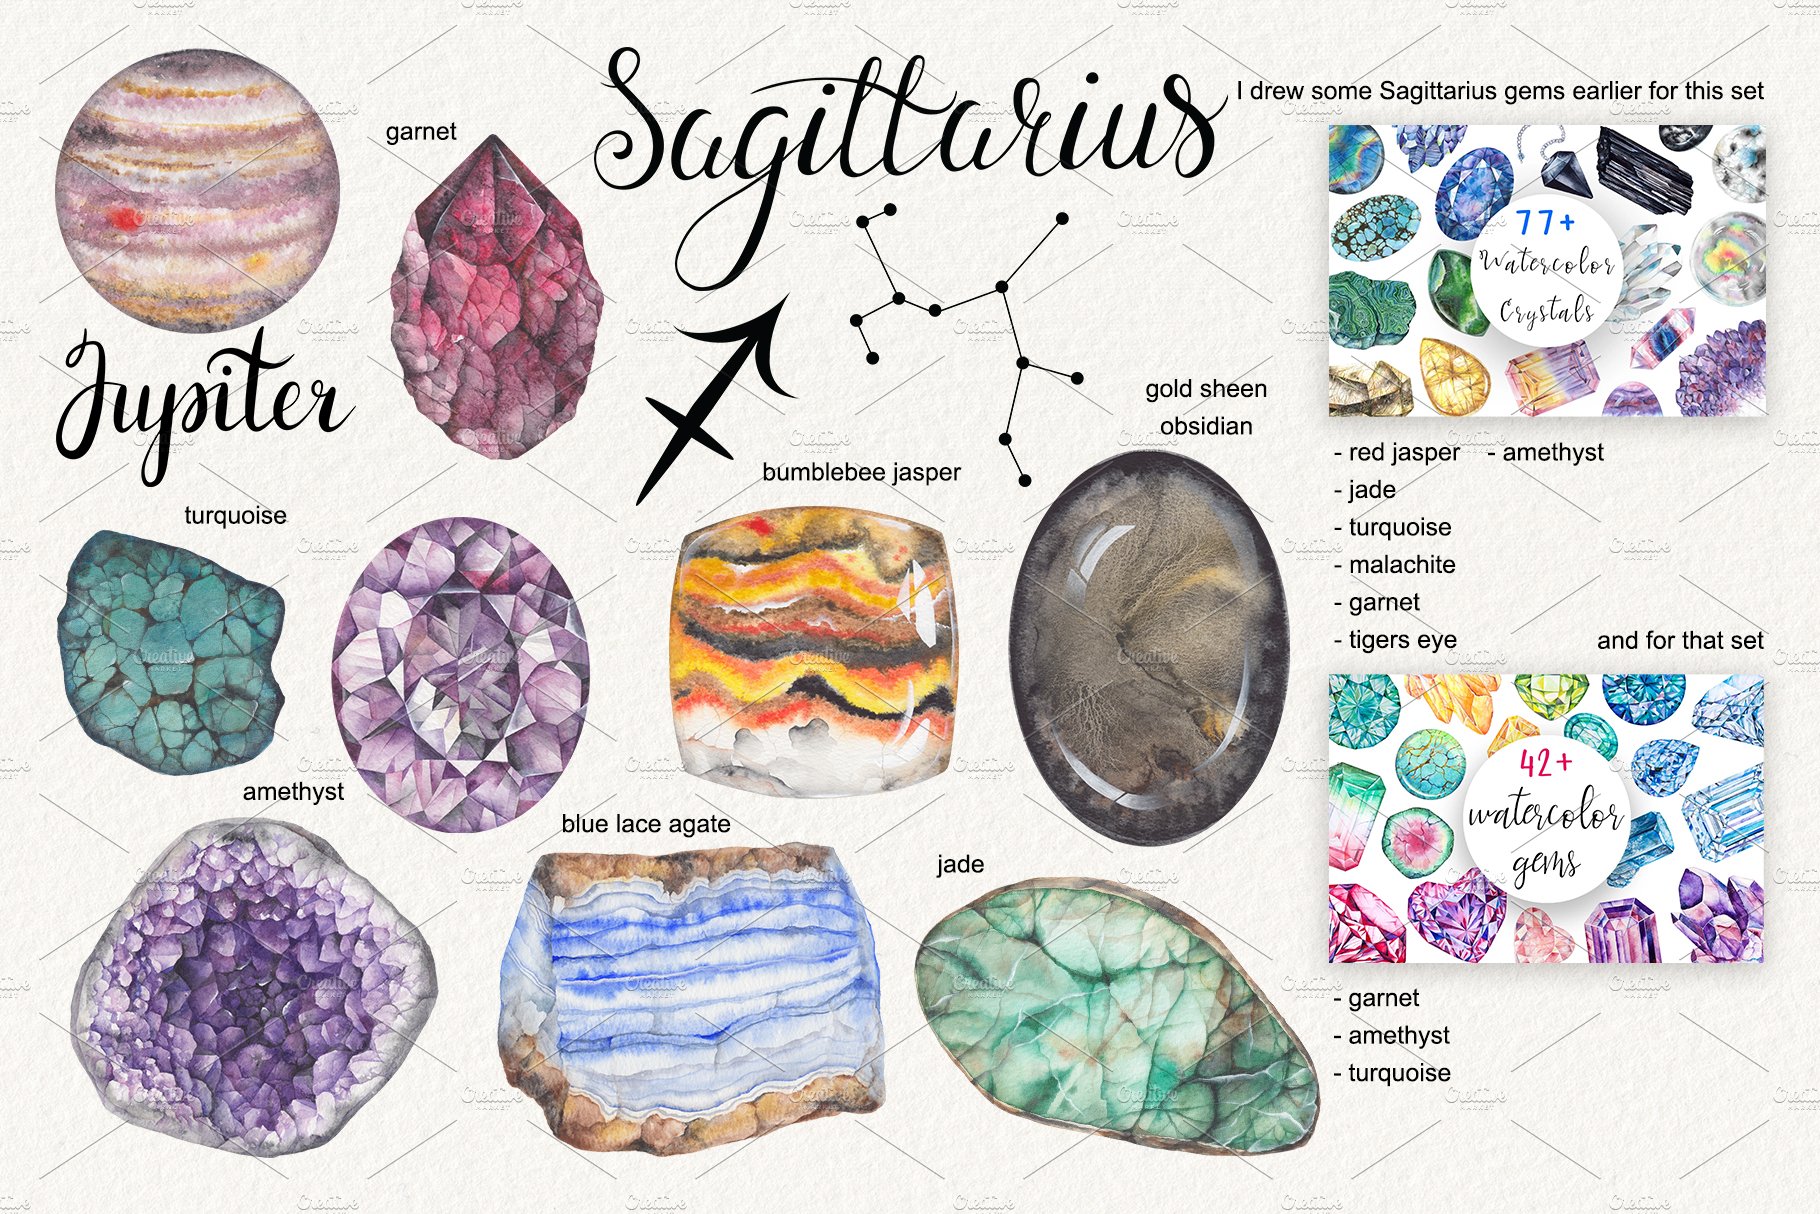 Cool gradient stones in the different colors for Sagittarius.